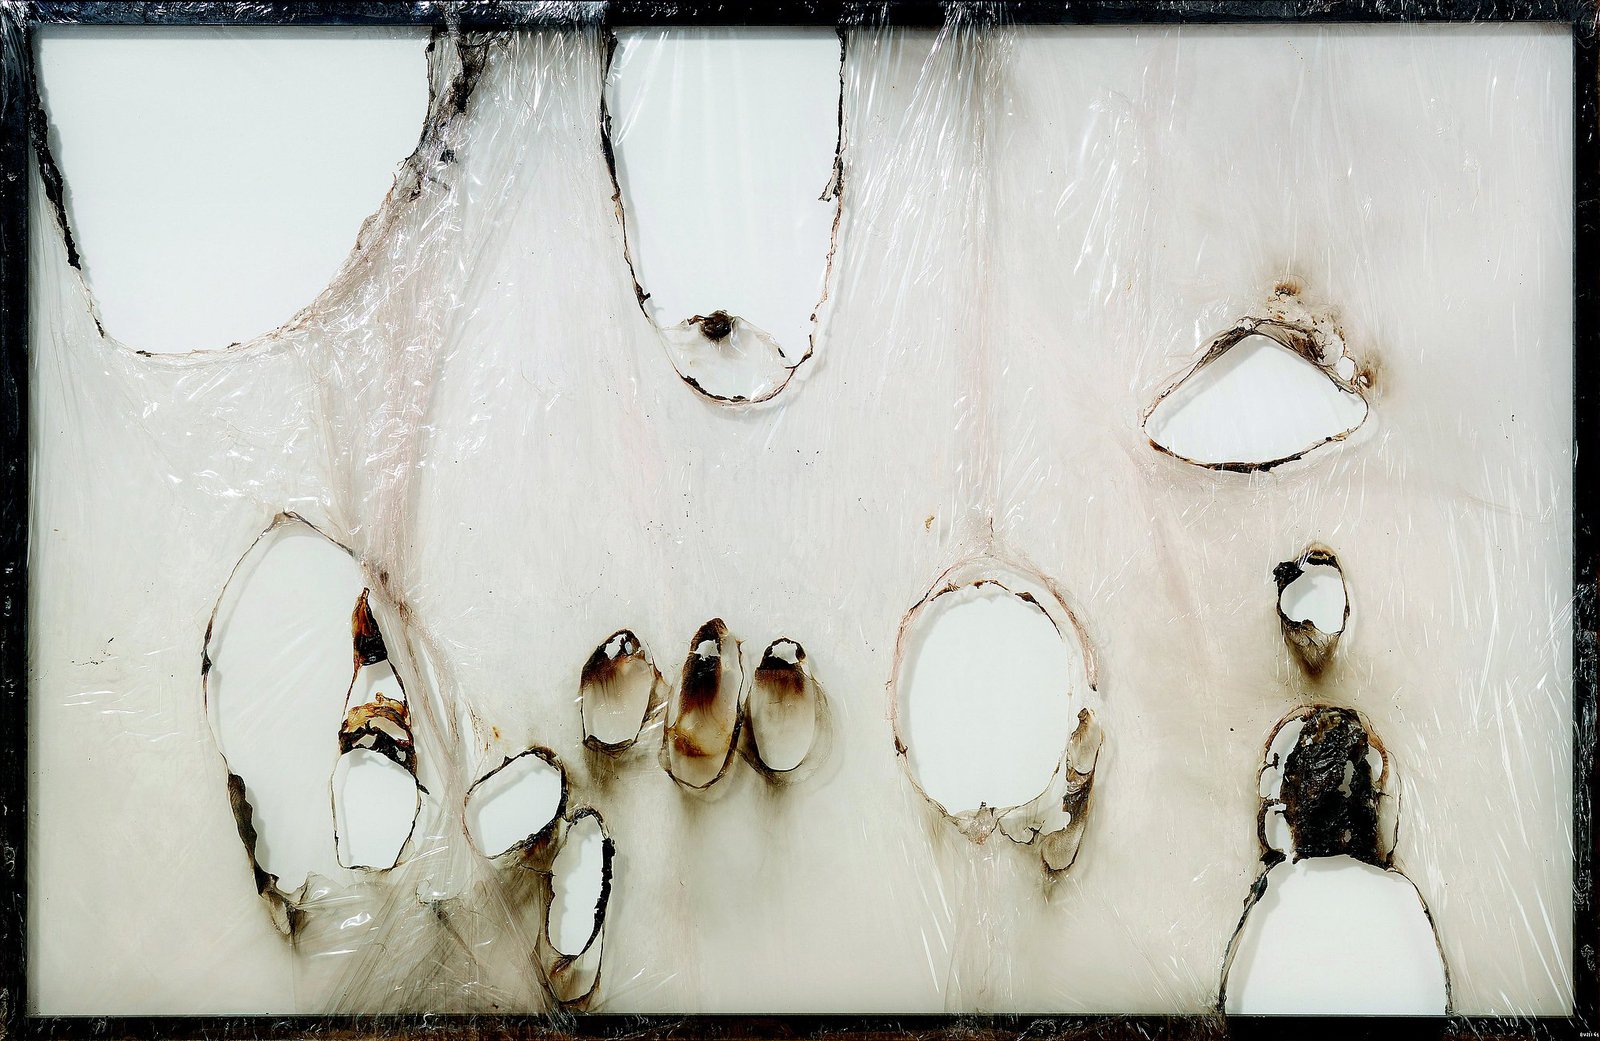 Альберто Бурри. Белый большой пластик. 1964. Целлофан на алюминиевом подрамнике, 143.6 x 242.8 см. Предоставлено Kravis Collection.